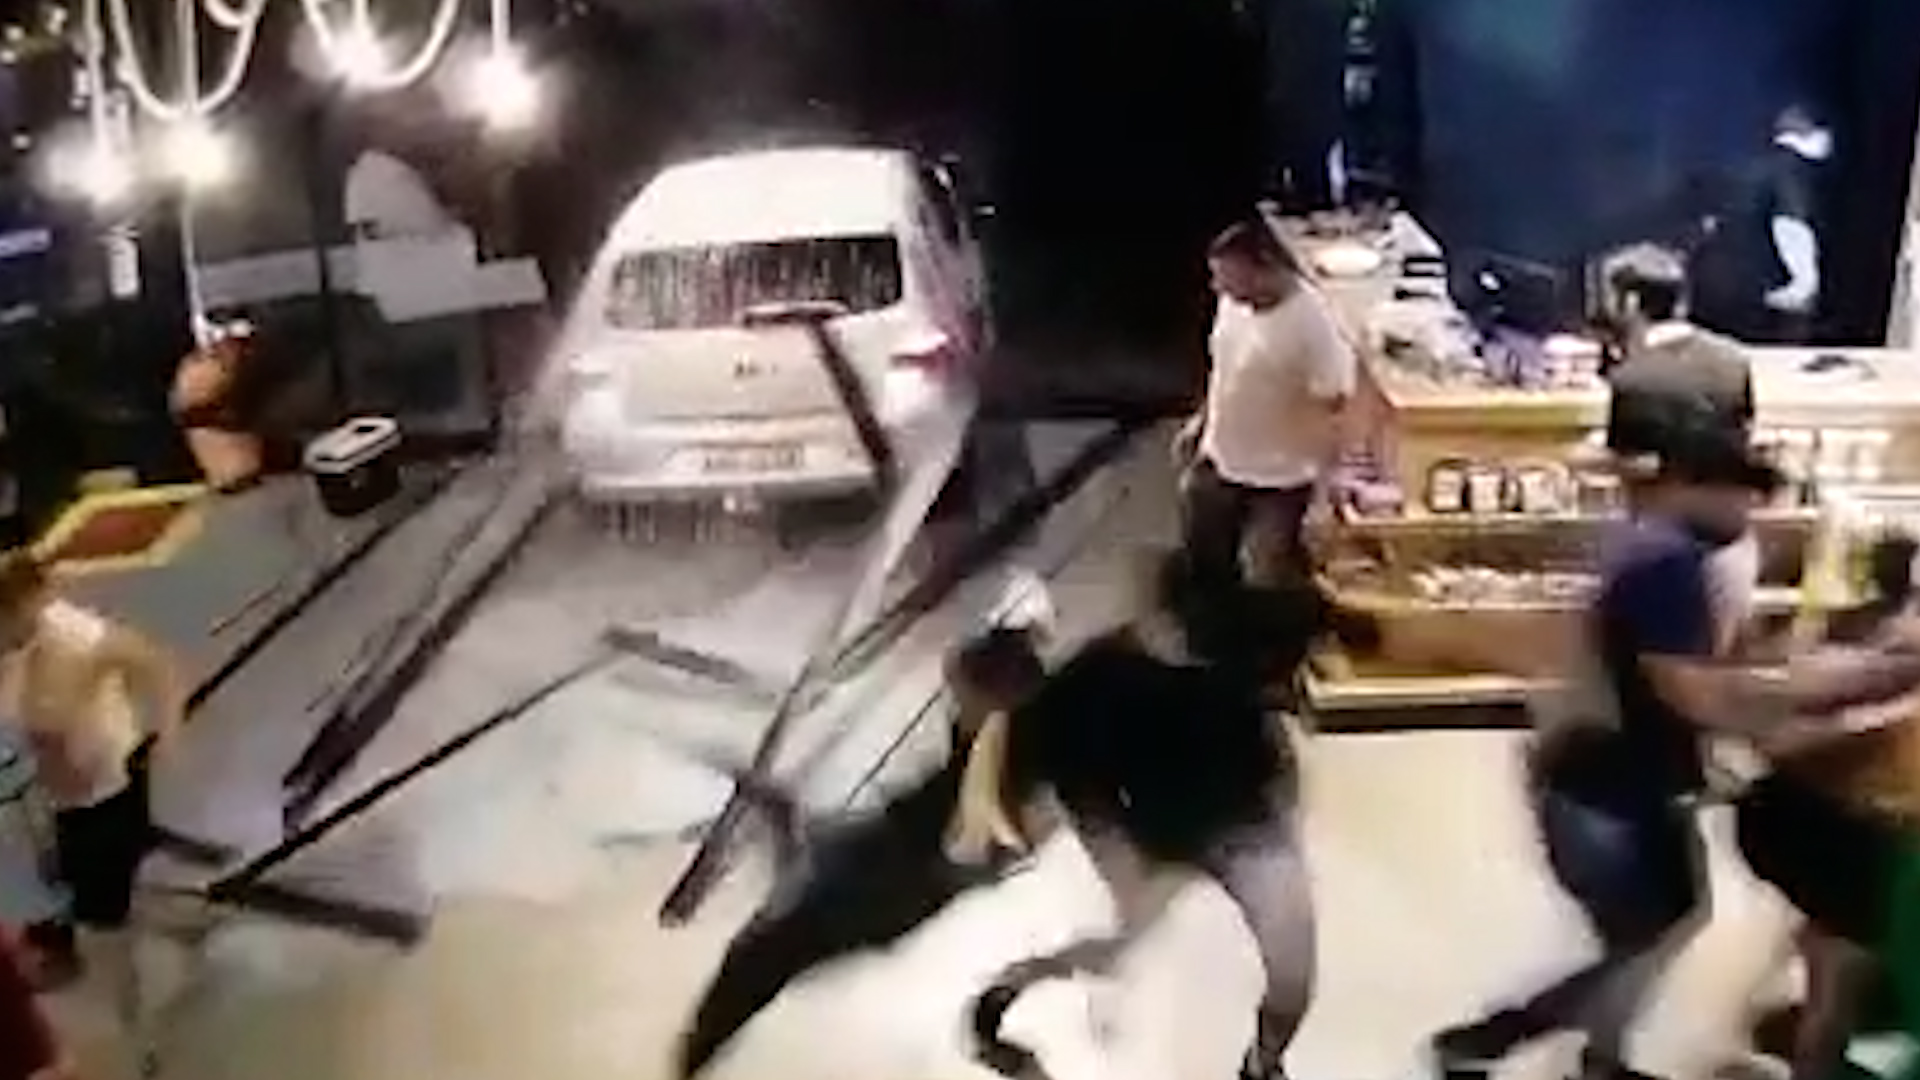  Imagem retirada de vídeo gravado por câmera de segurança do local, no exato momento em que o veículo destrói as portas de vidro do local, fazendo com que várias pessoas saiam correndo 